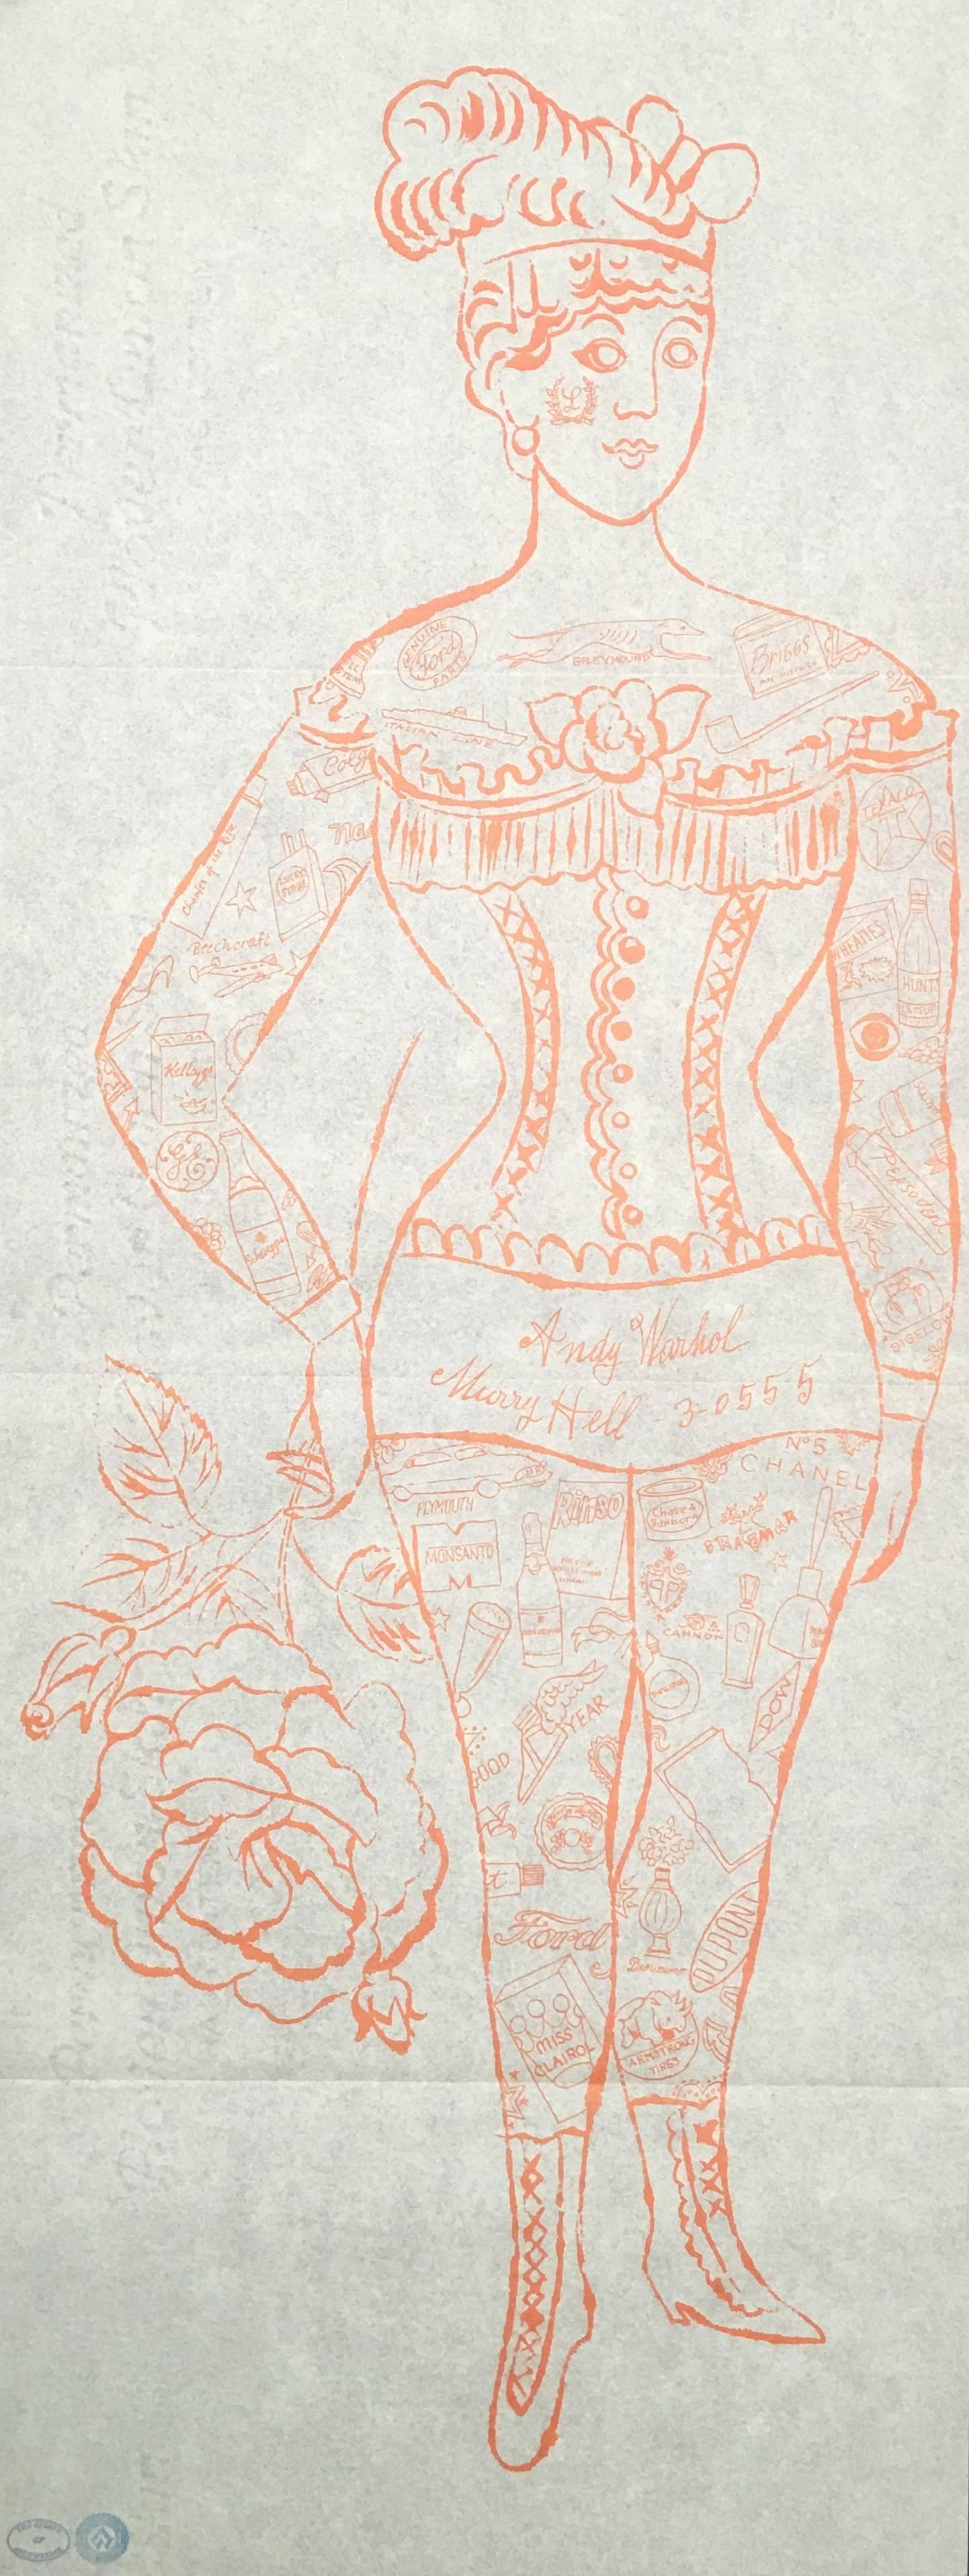 Andy Warhol, "Tattooed Woman", lithograph